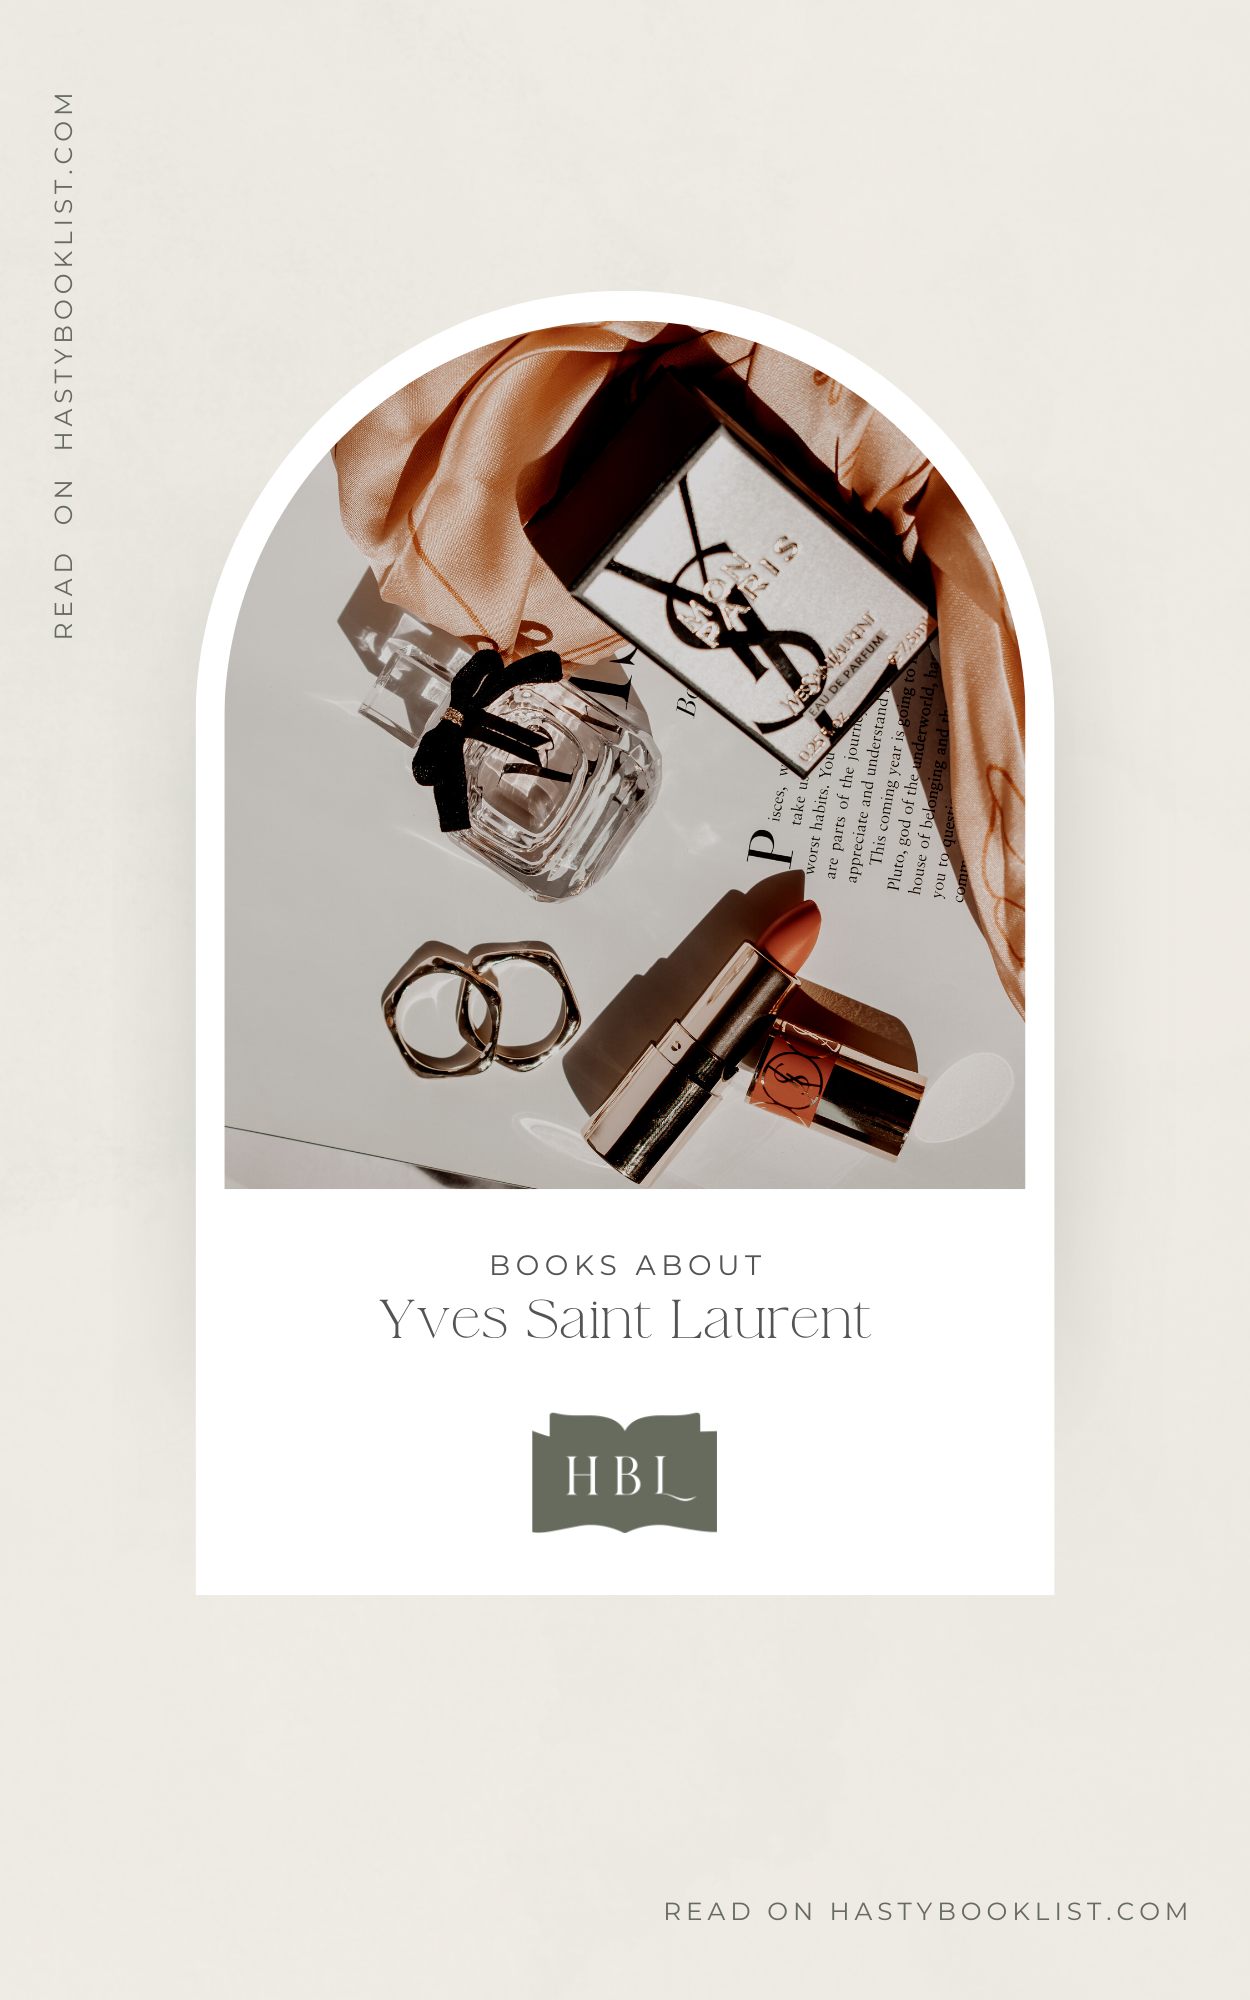 R.E.A.D] Yves Saint Laurent Catwalk The Complete Haute Couture